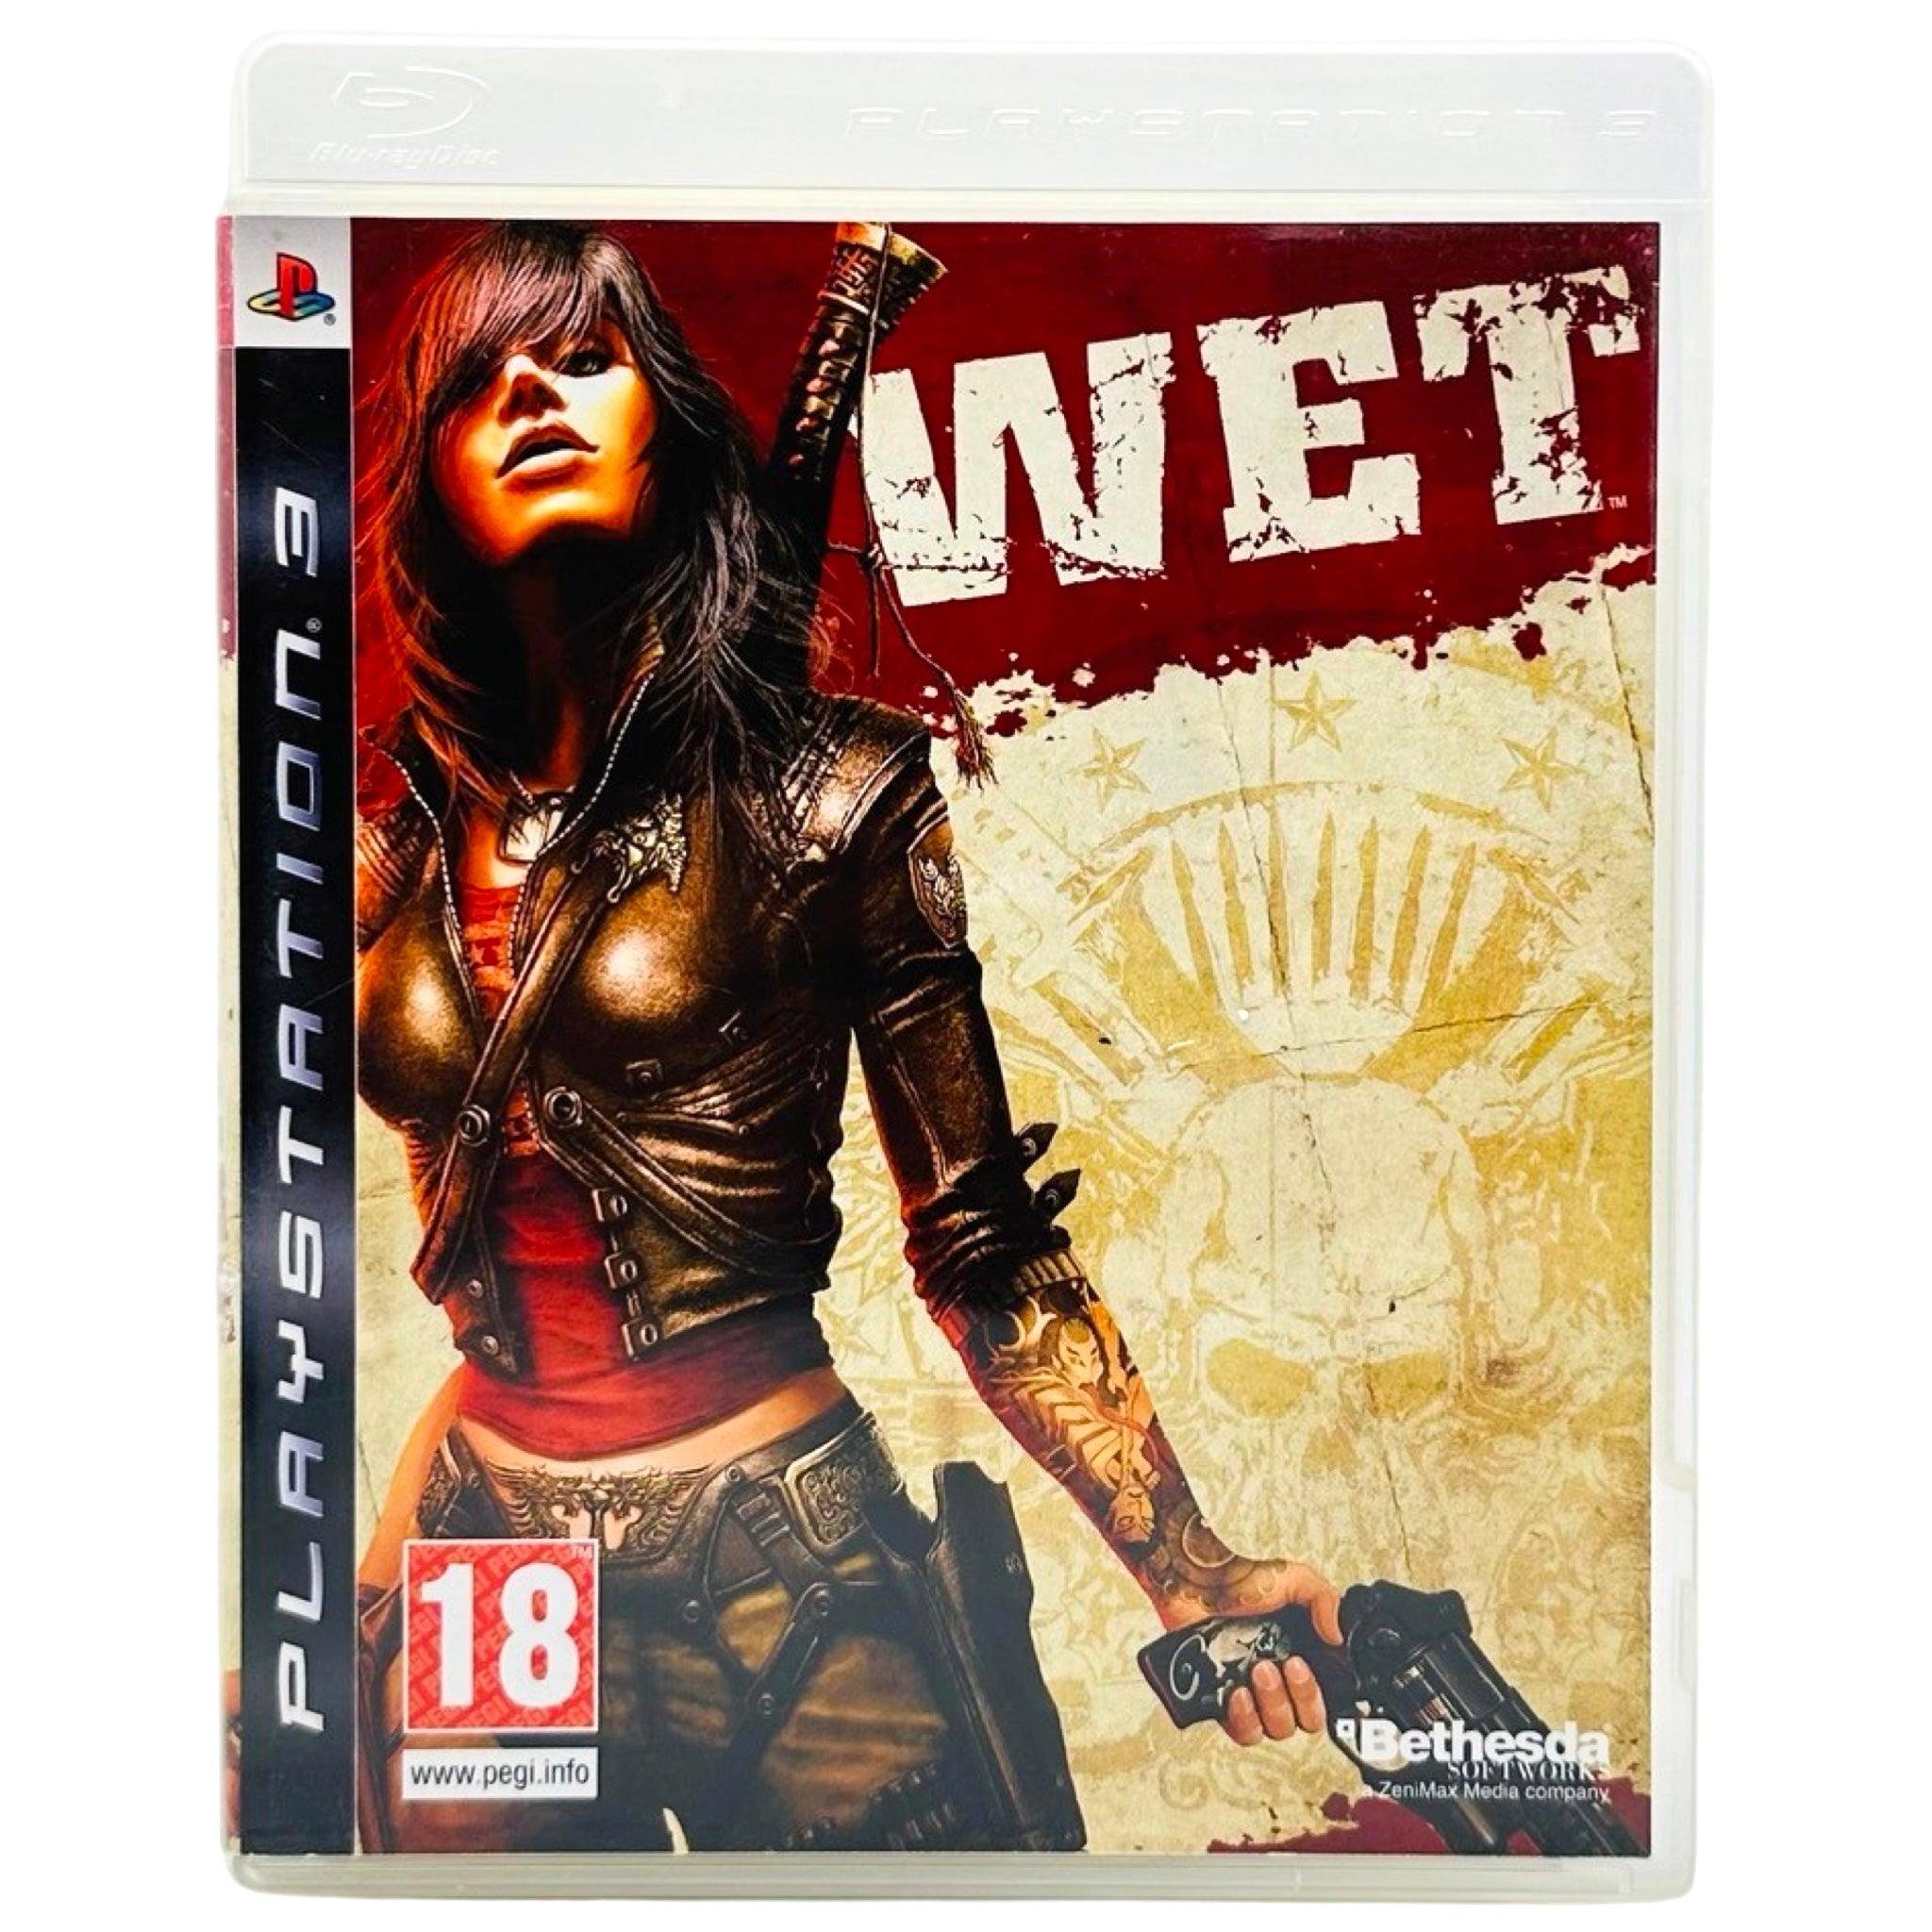 PS3: Wet - RetroGaming.no